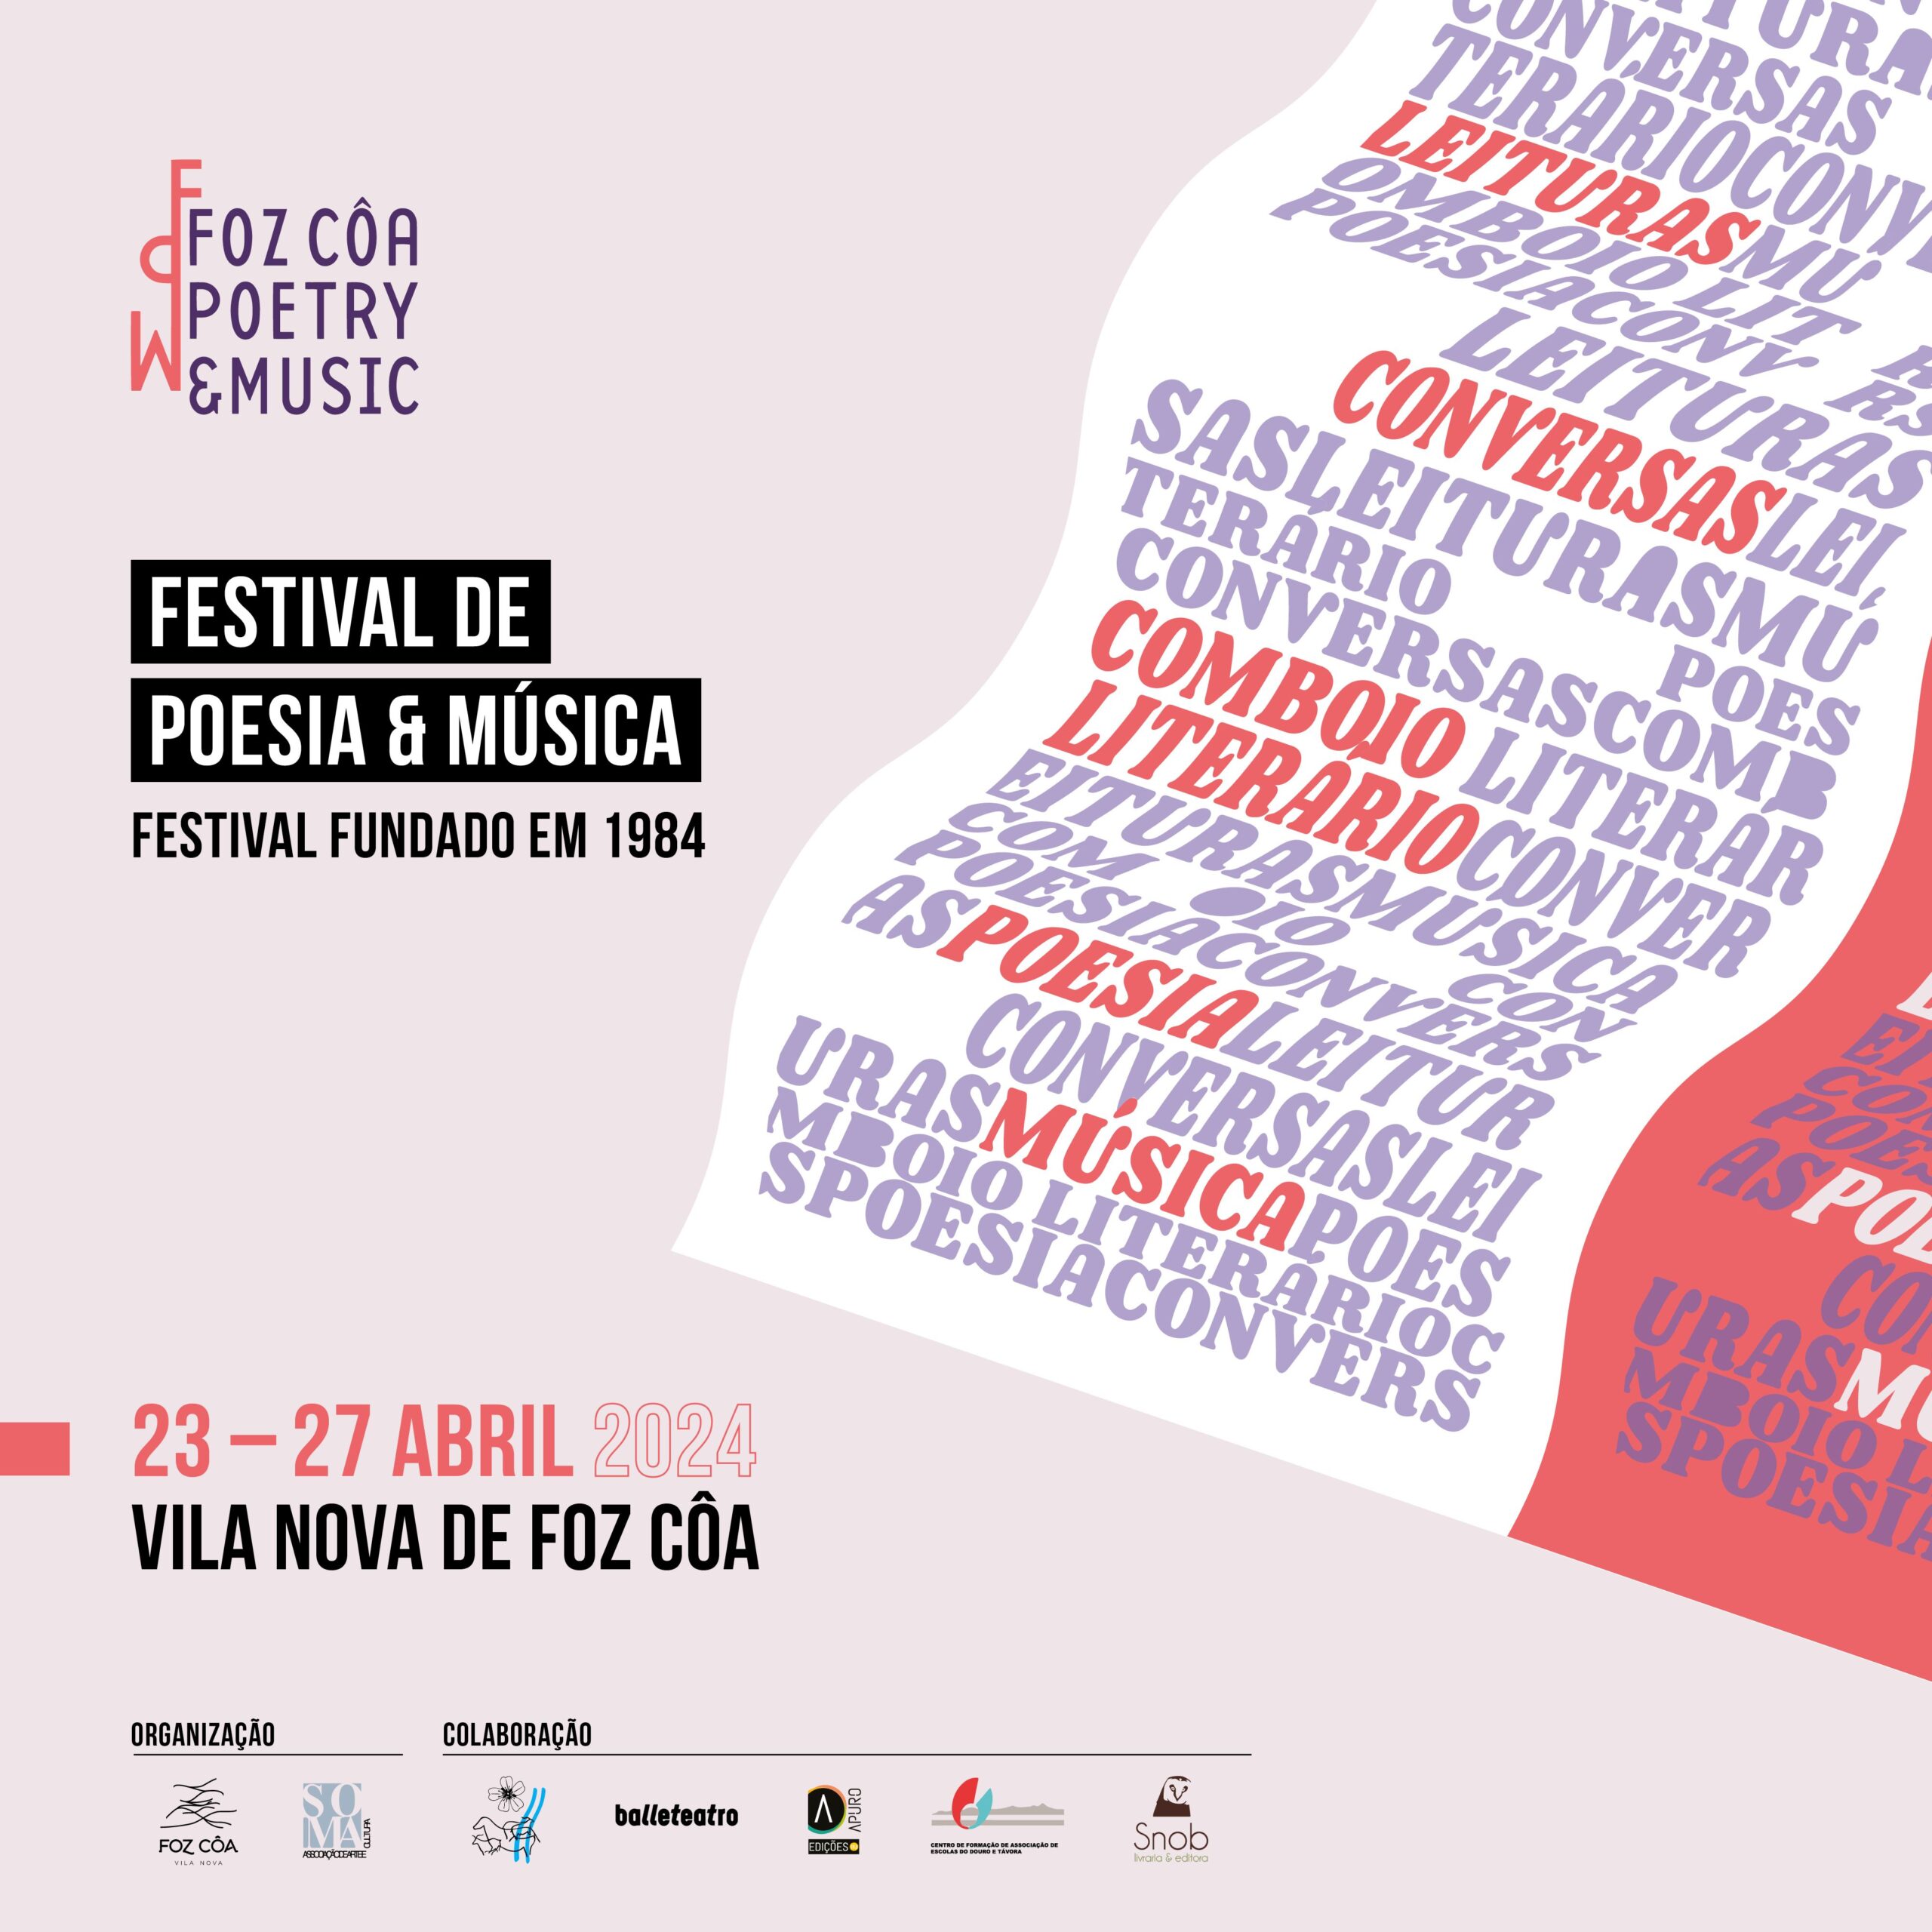 Capa Oficial do Evento Festival de Poesia e Música de Foz Côa